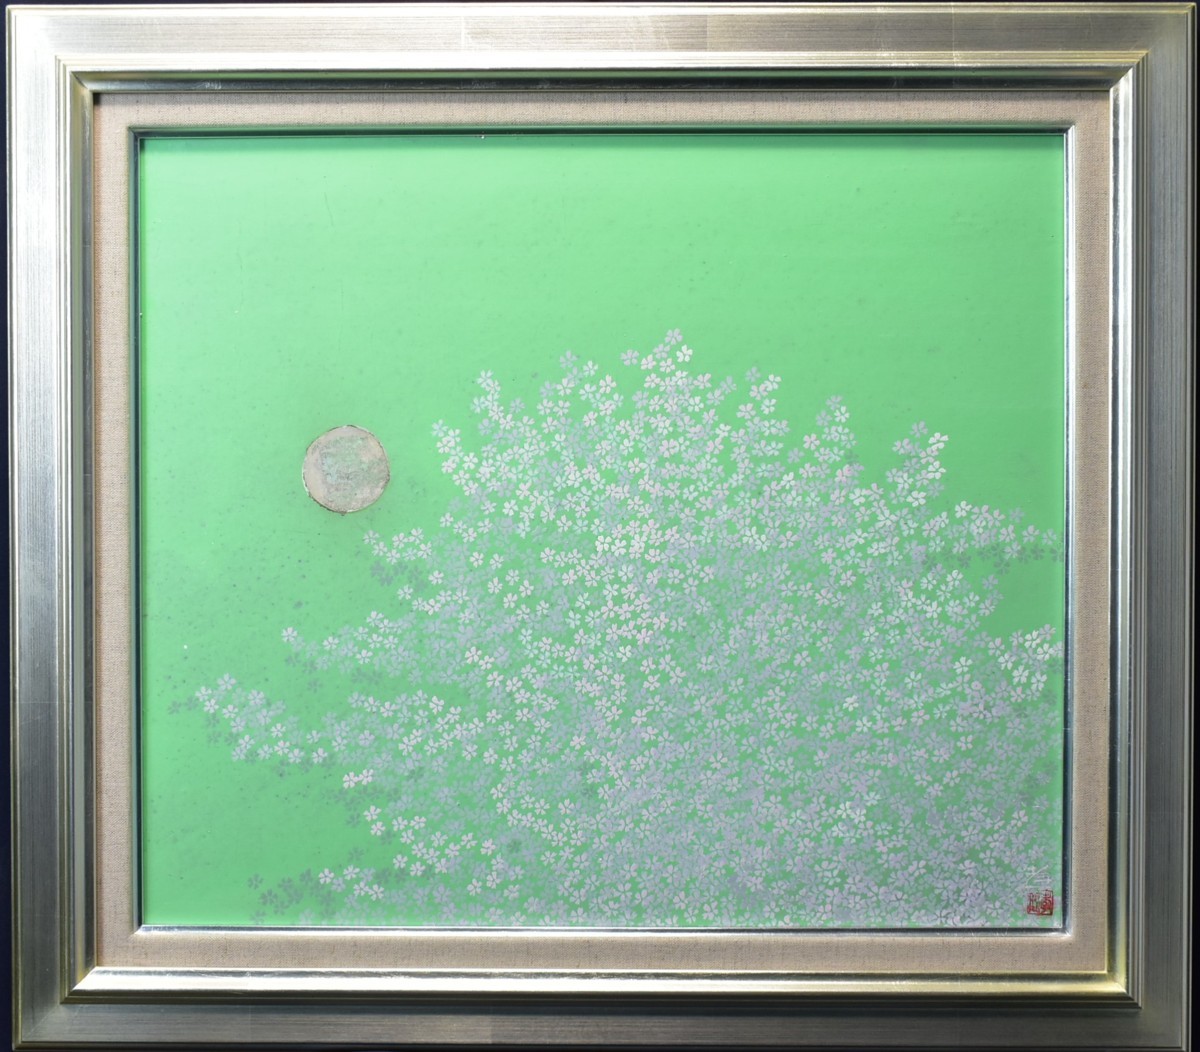 [मासमित्सु गैलरी - 5, प्रदर्शन पर 000 कार्य, आप जो खोज रहे हैं वह निश्चित रूप से आपको मिल जाएगा] खोजने के लिए अनुशंसित कार्य! कोइची सुज़ुकी 10एफ सकुरा राइम जापानी पेंटिंग, चित्रकारी, जापानी पेंटिंग, परिदृश्य, फुगेत्सु